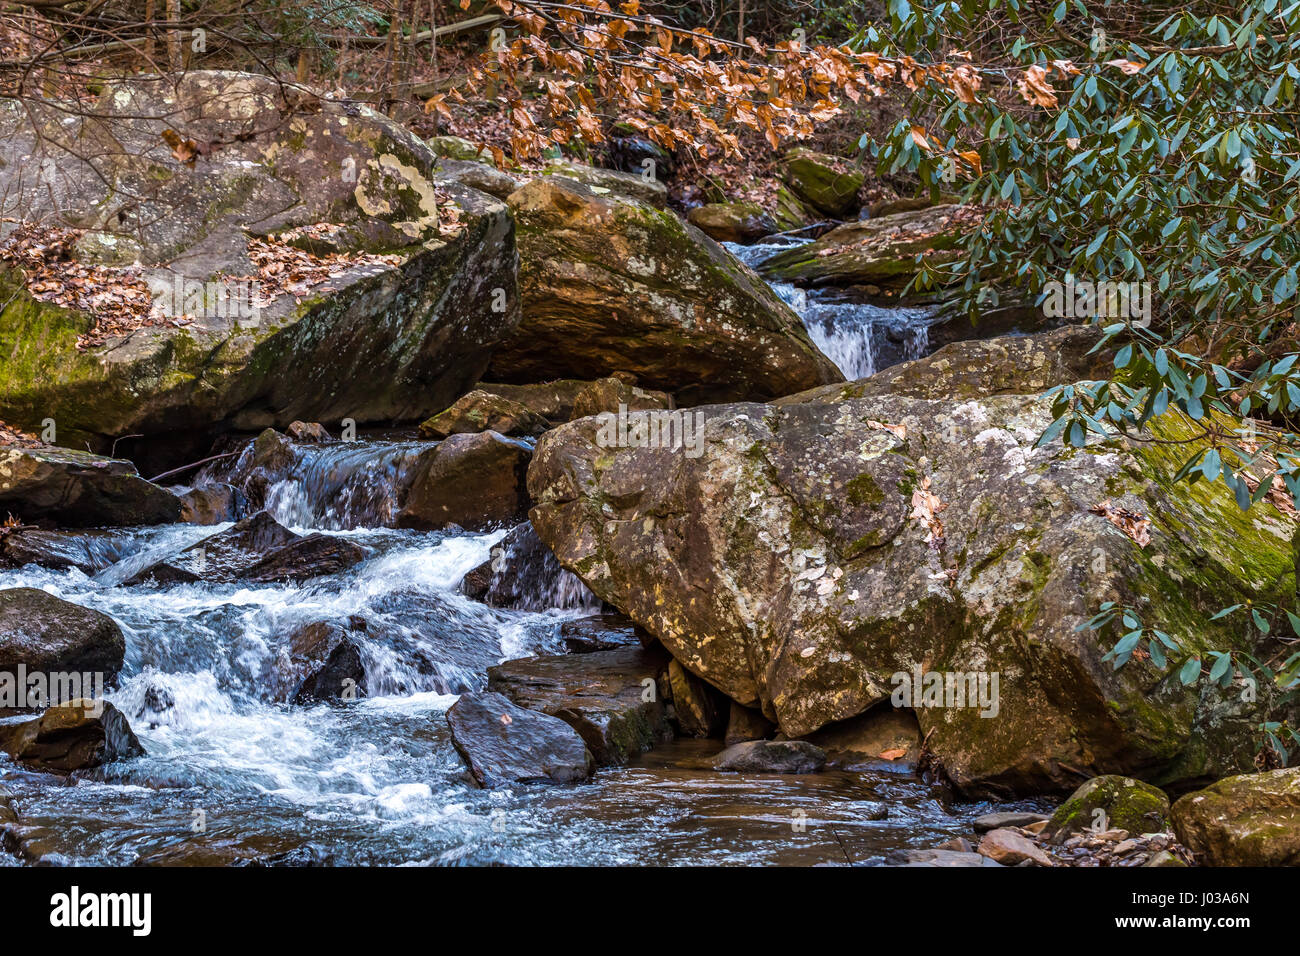 Colt Creek near Saluda North Carolina traverses a ocky path downstream. Stock Photo